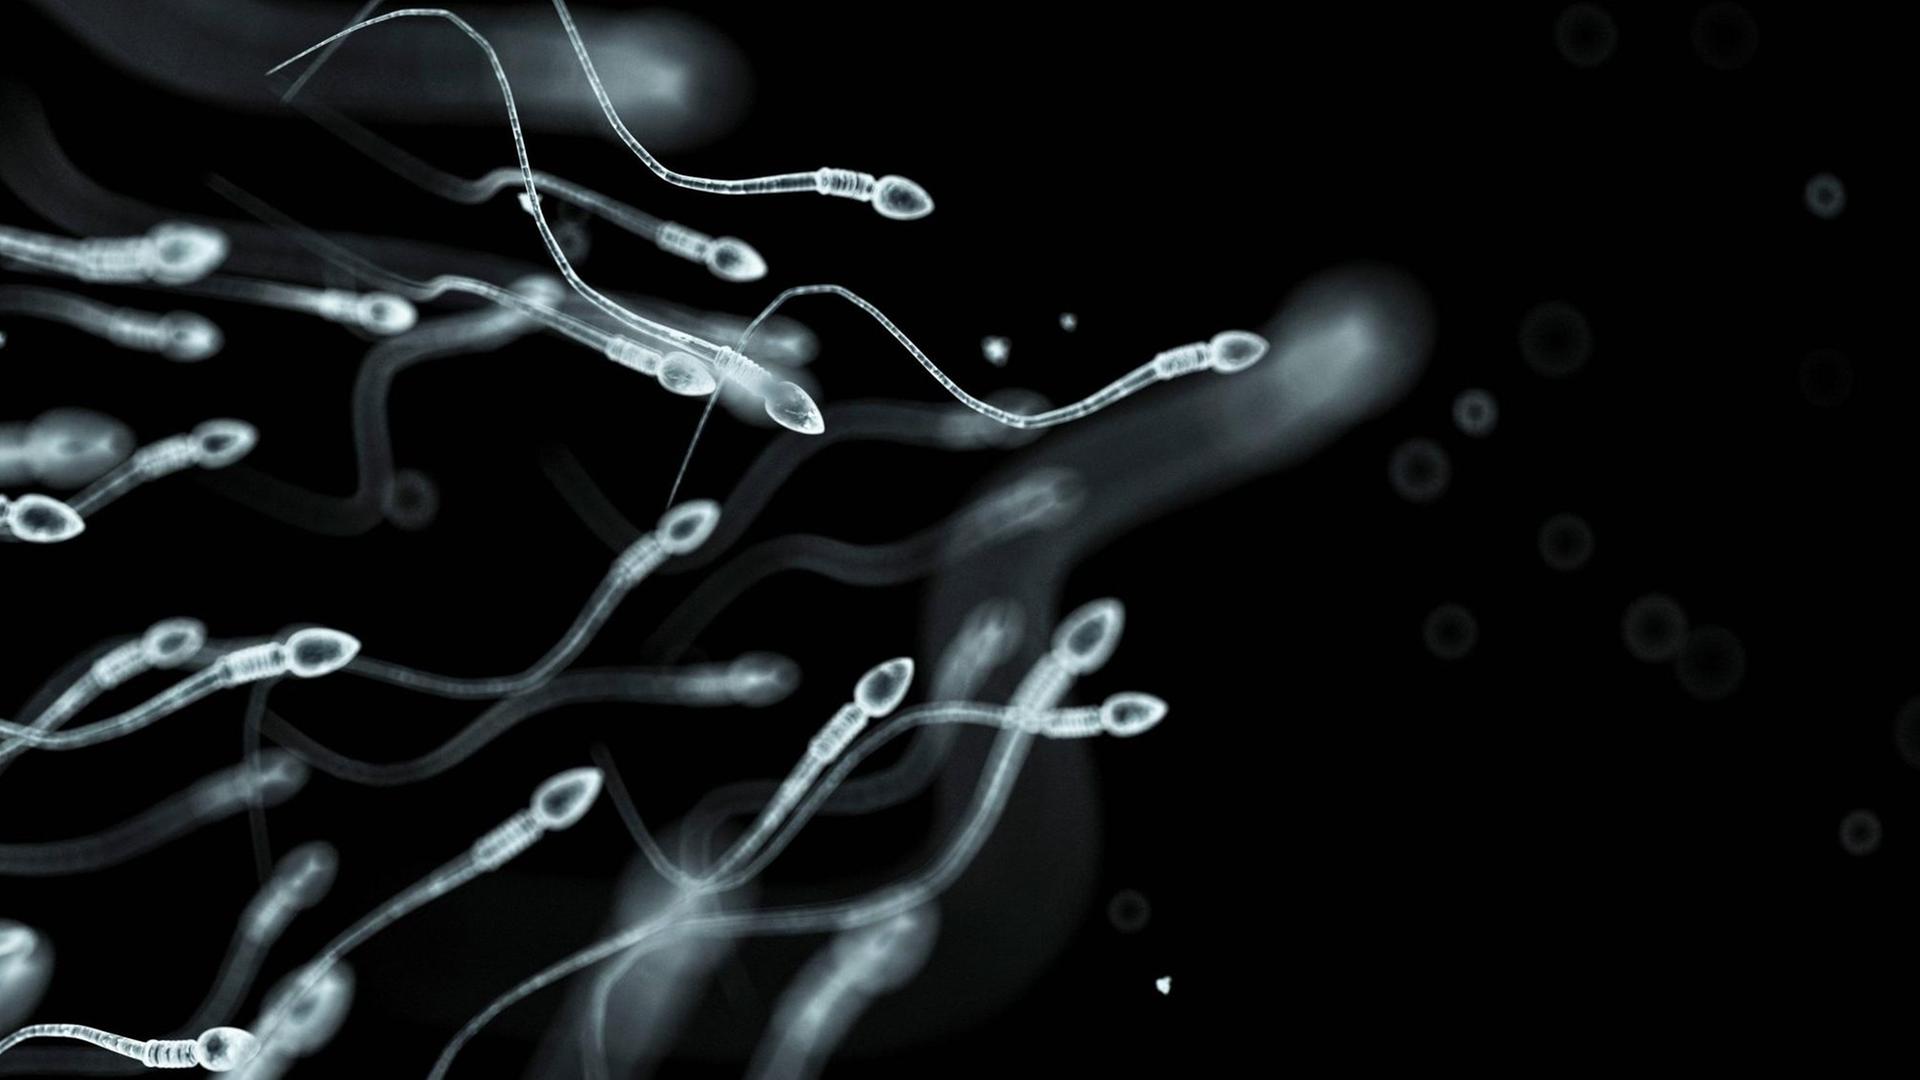 Zu sehen sind mehrere Spermien in einer mikroskopischen Nahaufnahme, die sich weiß-transparent vor einem dunklem Hintergrund fortbewegen.